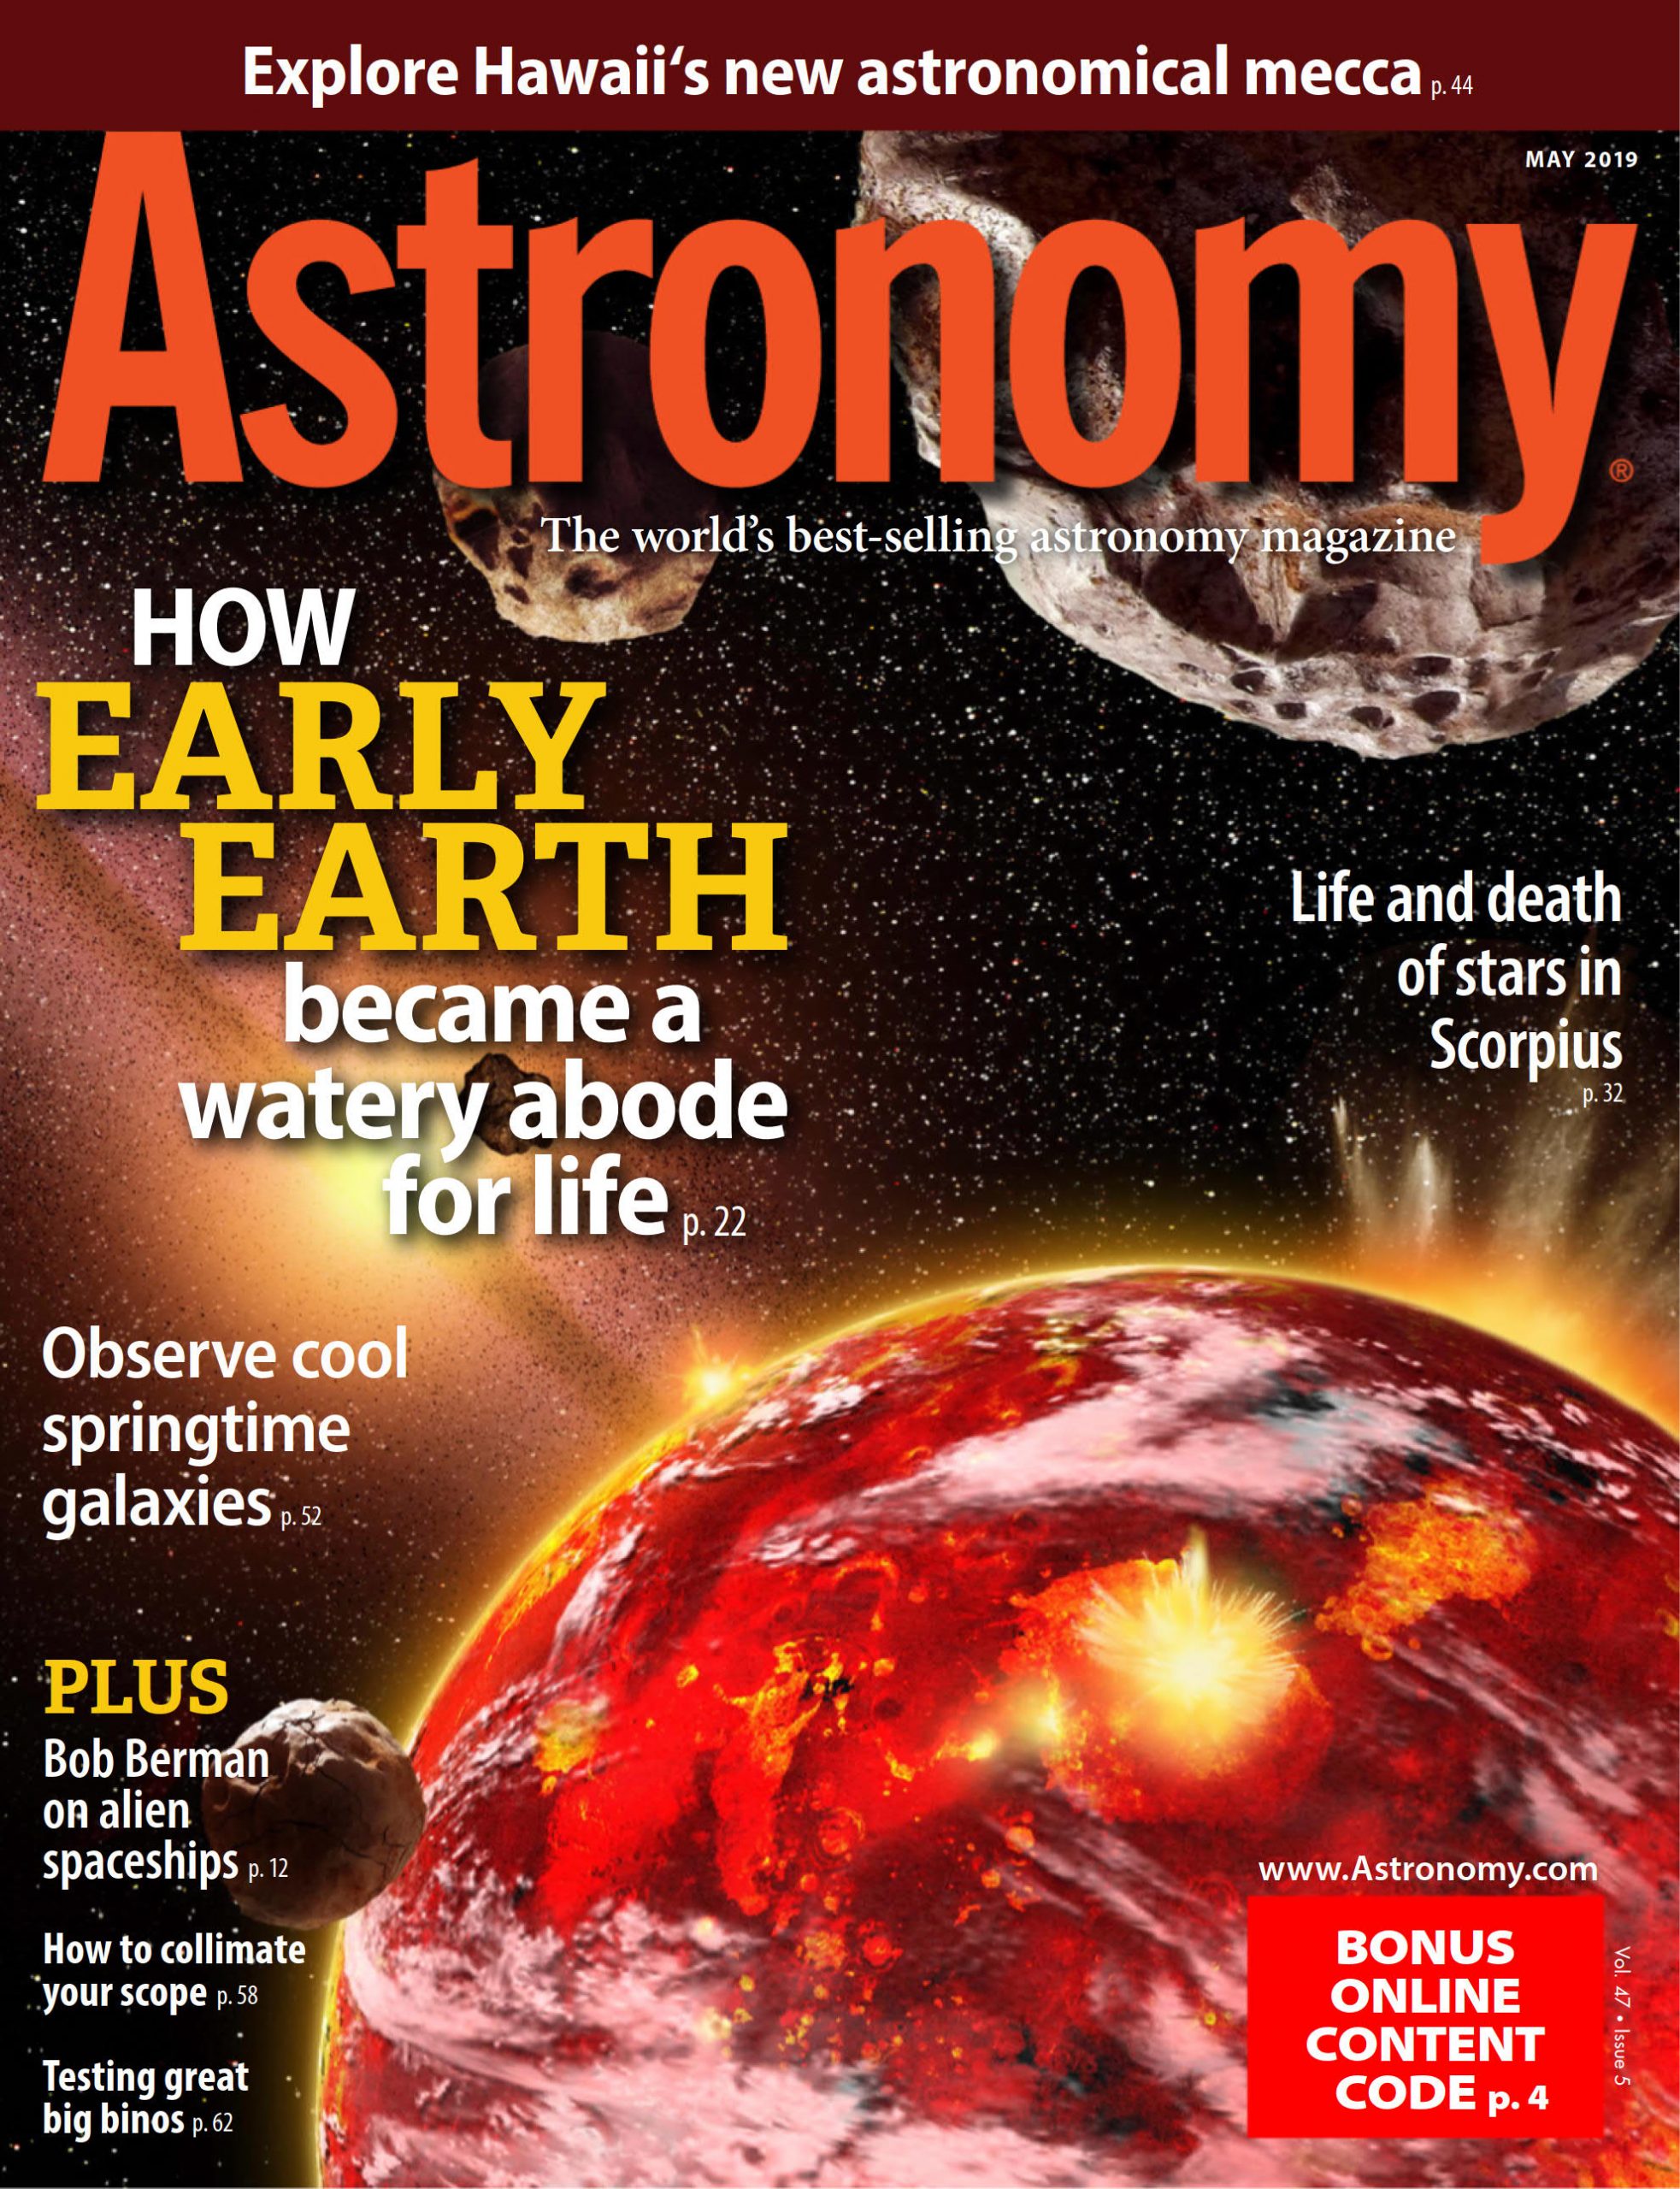 Astronomy 天文学杂志 MAY 2019